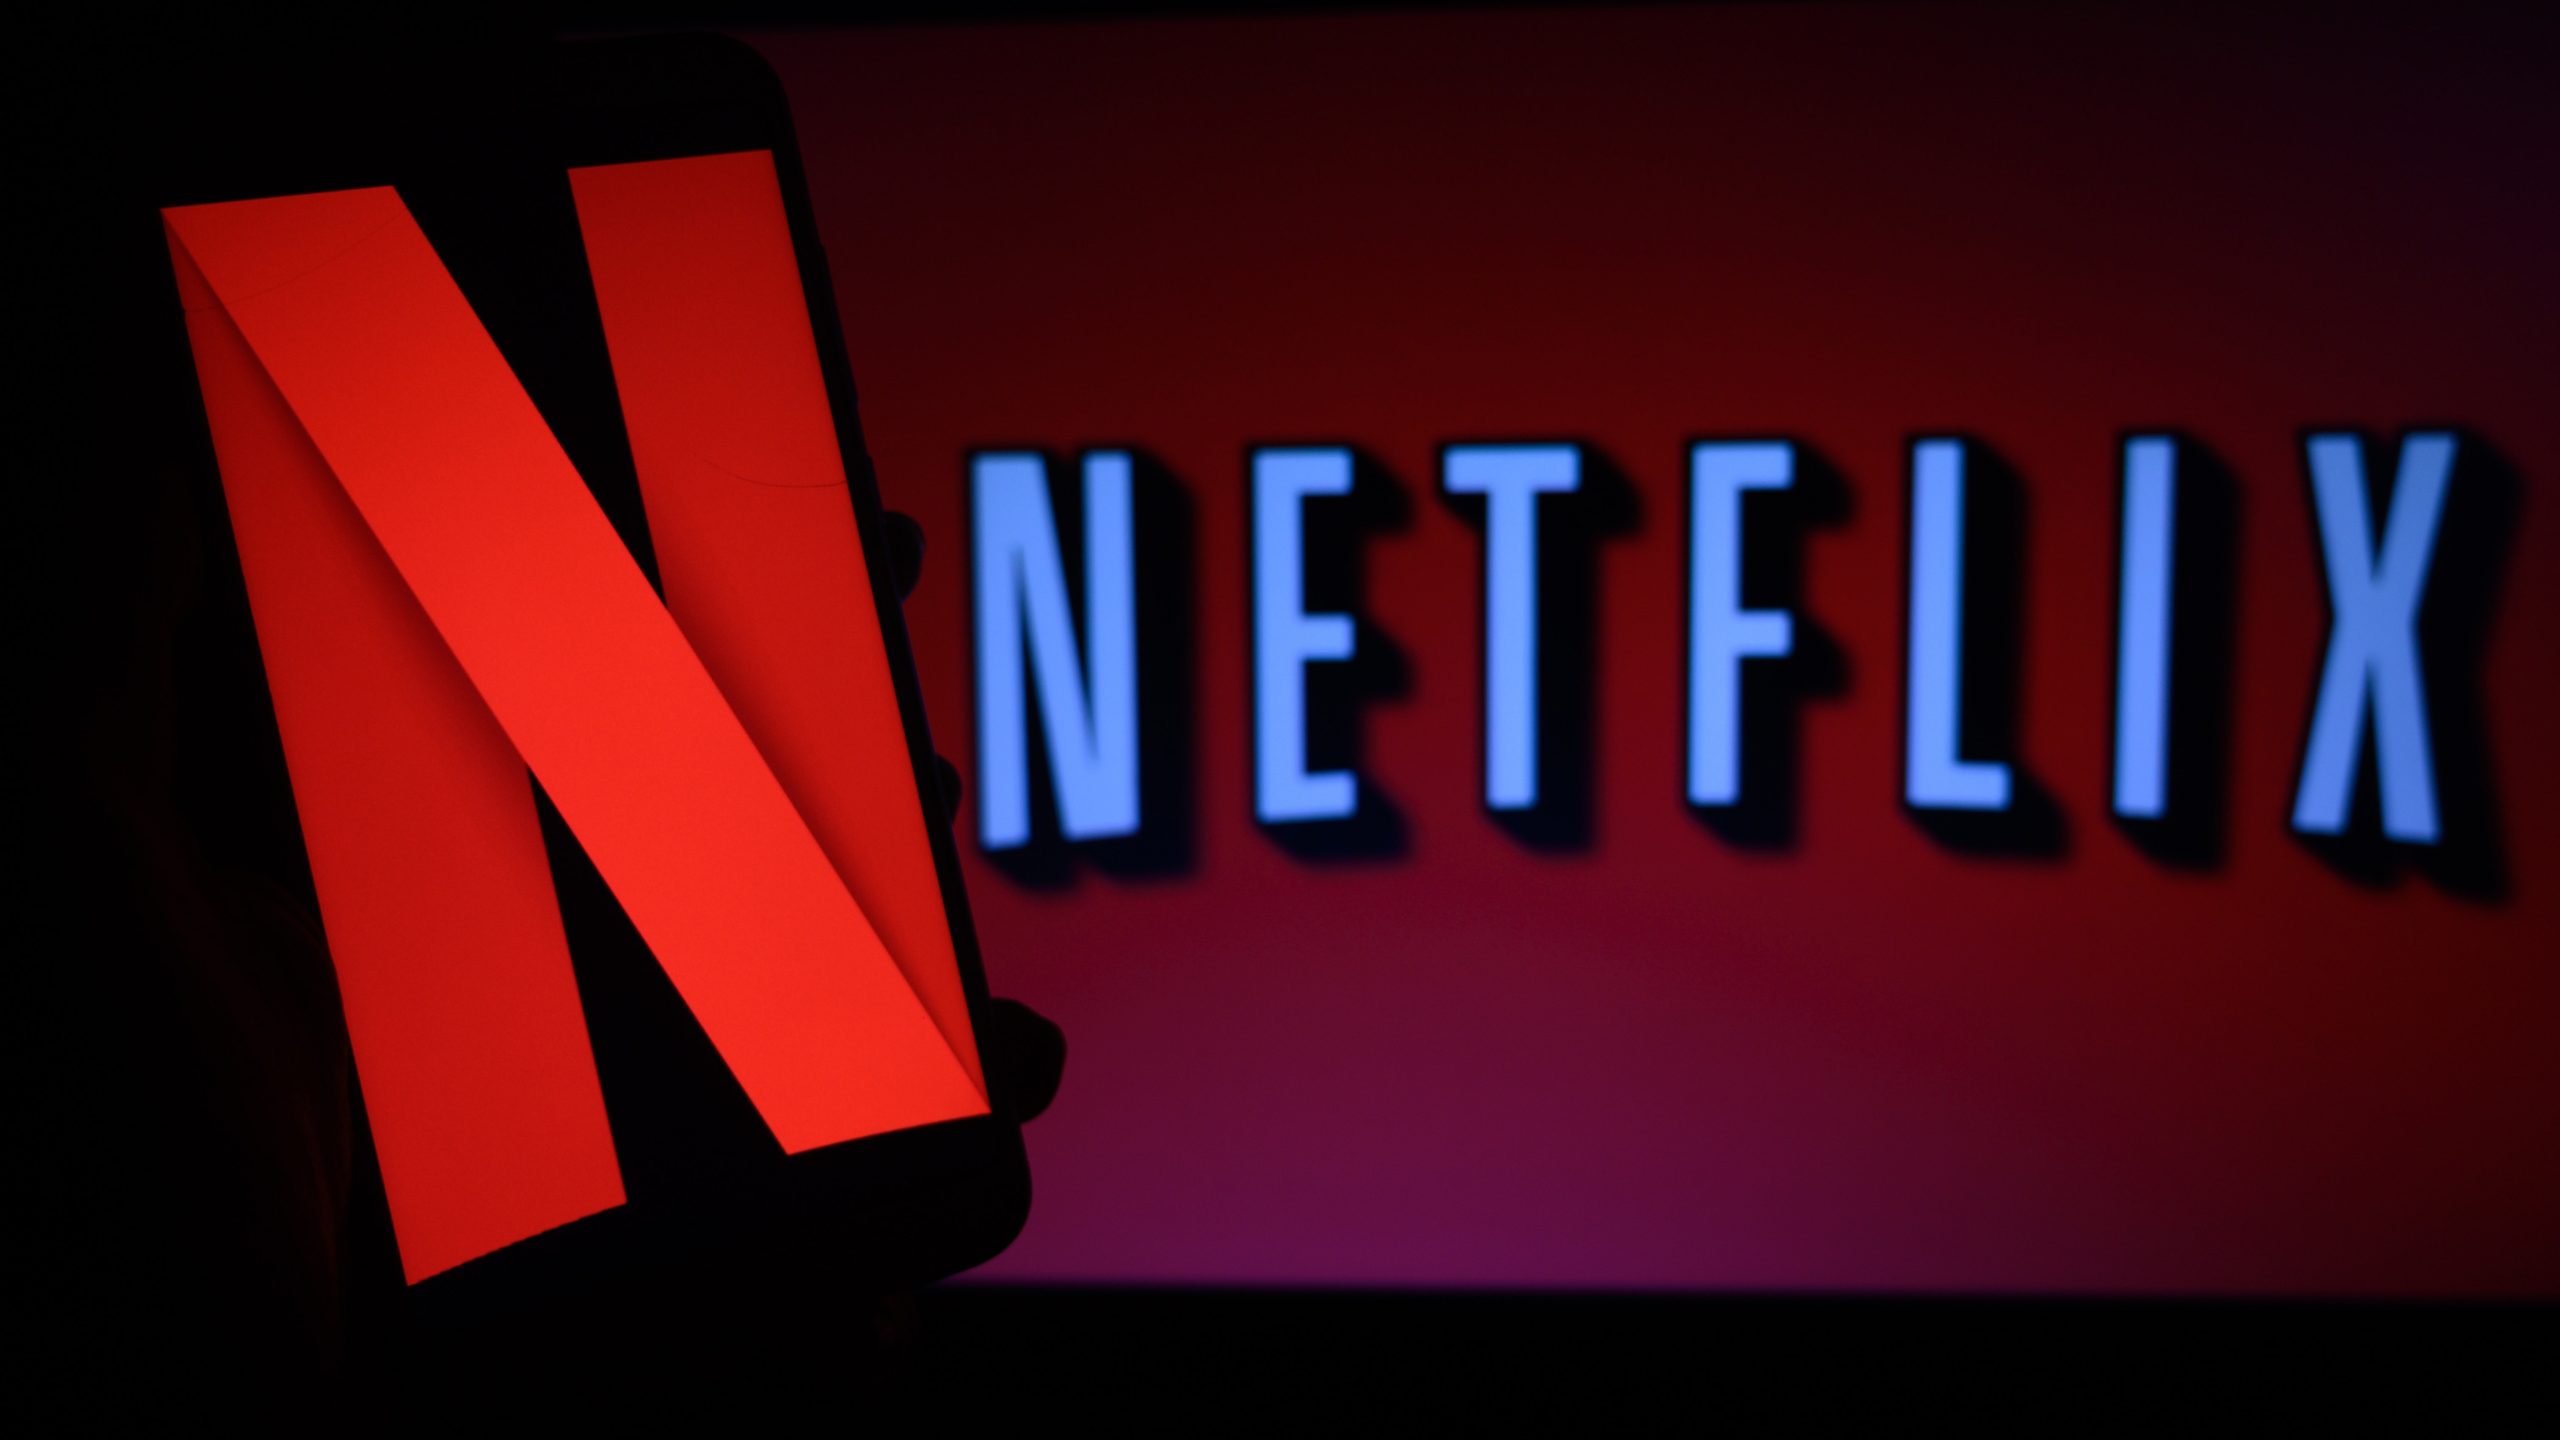 Netflix les dice a los empleados que gasten el dinero de la empresa 'sabiamente' después de la pérdida masiva de suscriptores